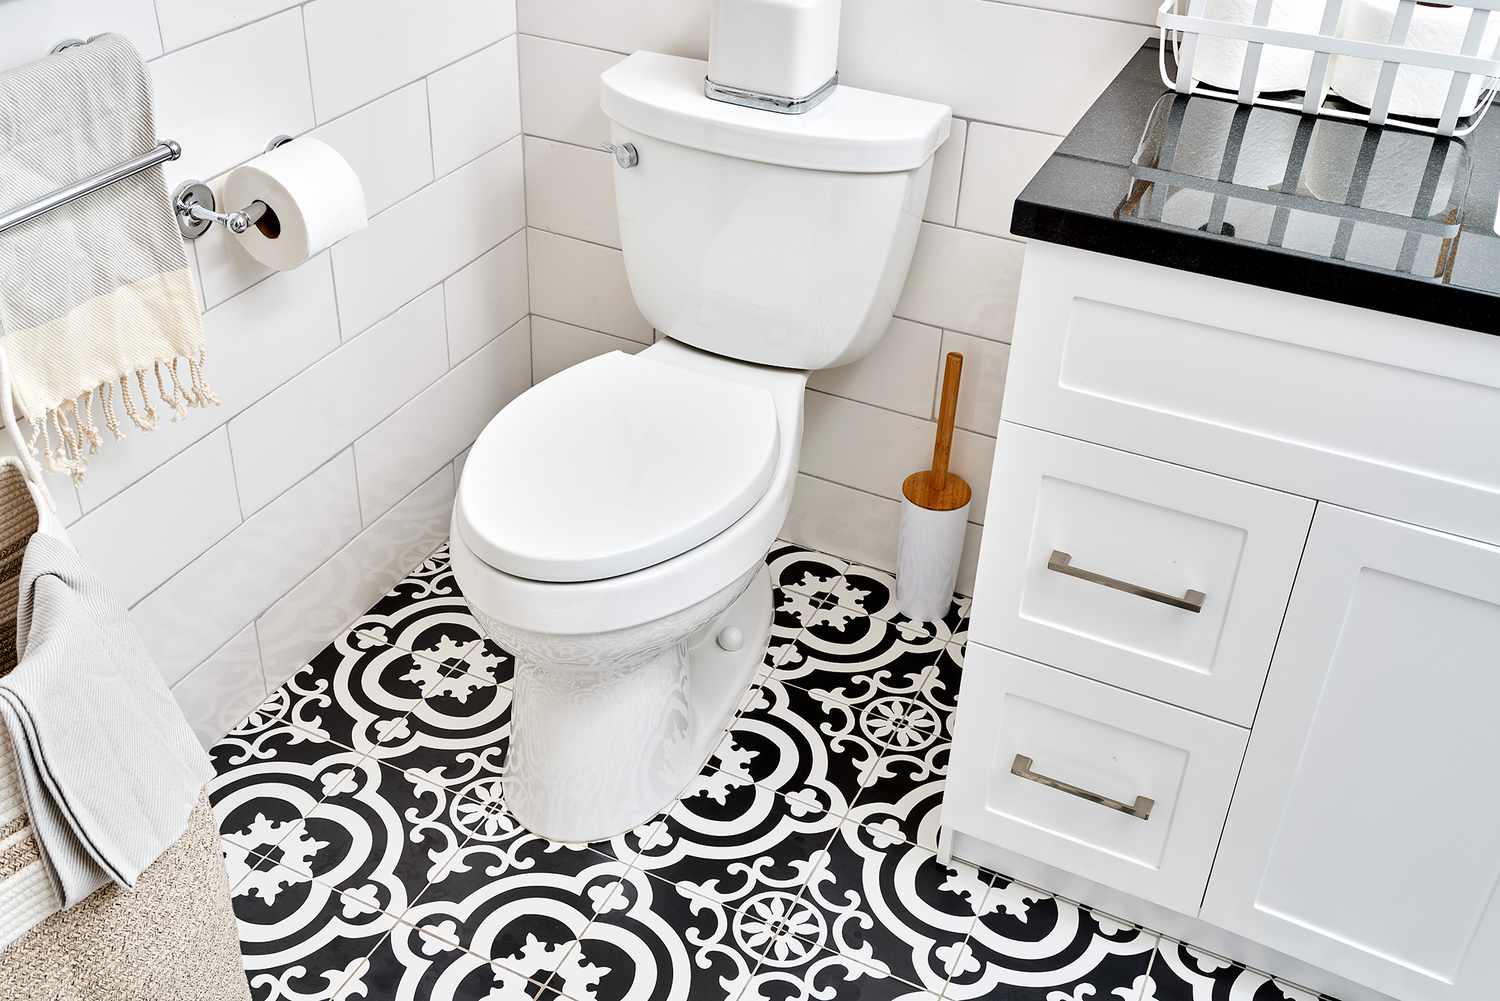 Vaso sanitário padrão com descarga por gravidade cercado por piso de ladrilhos com padrão preto e branco no banheiro